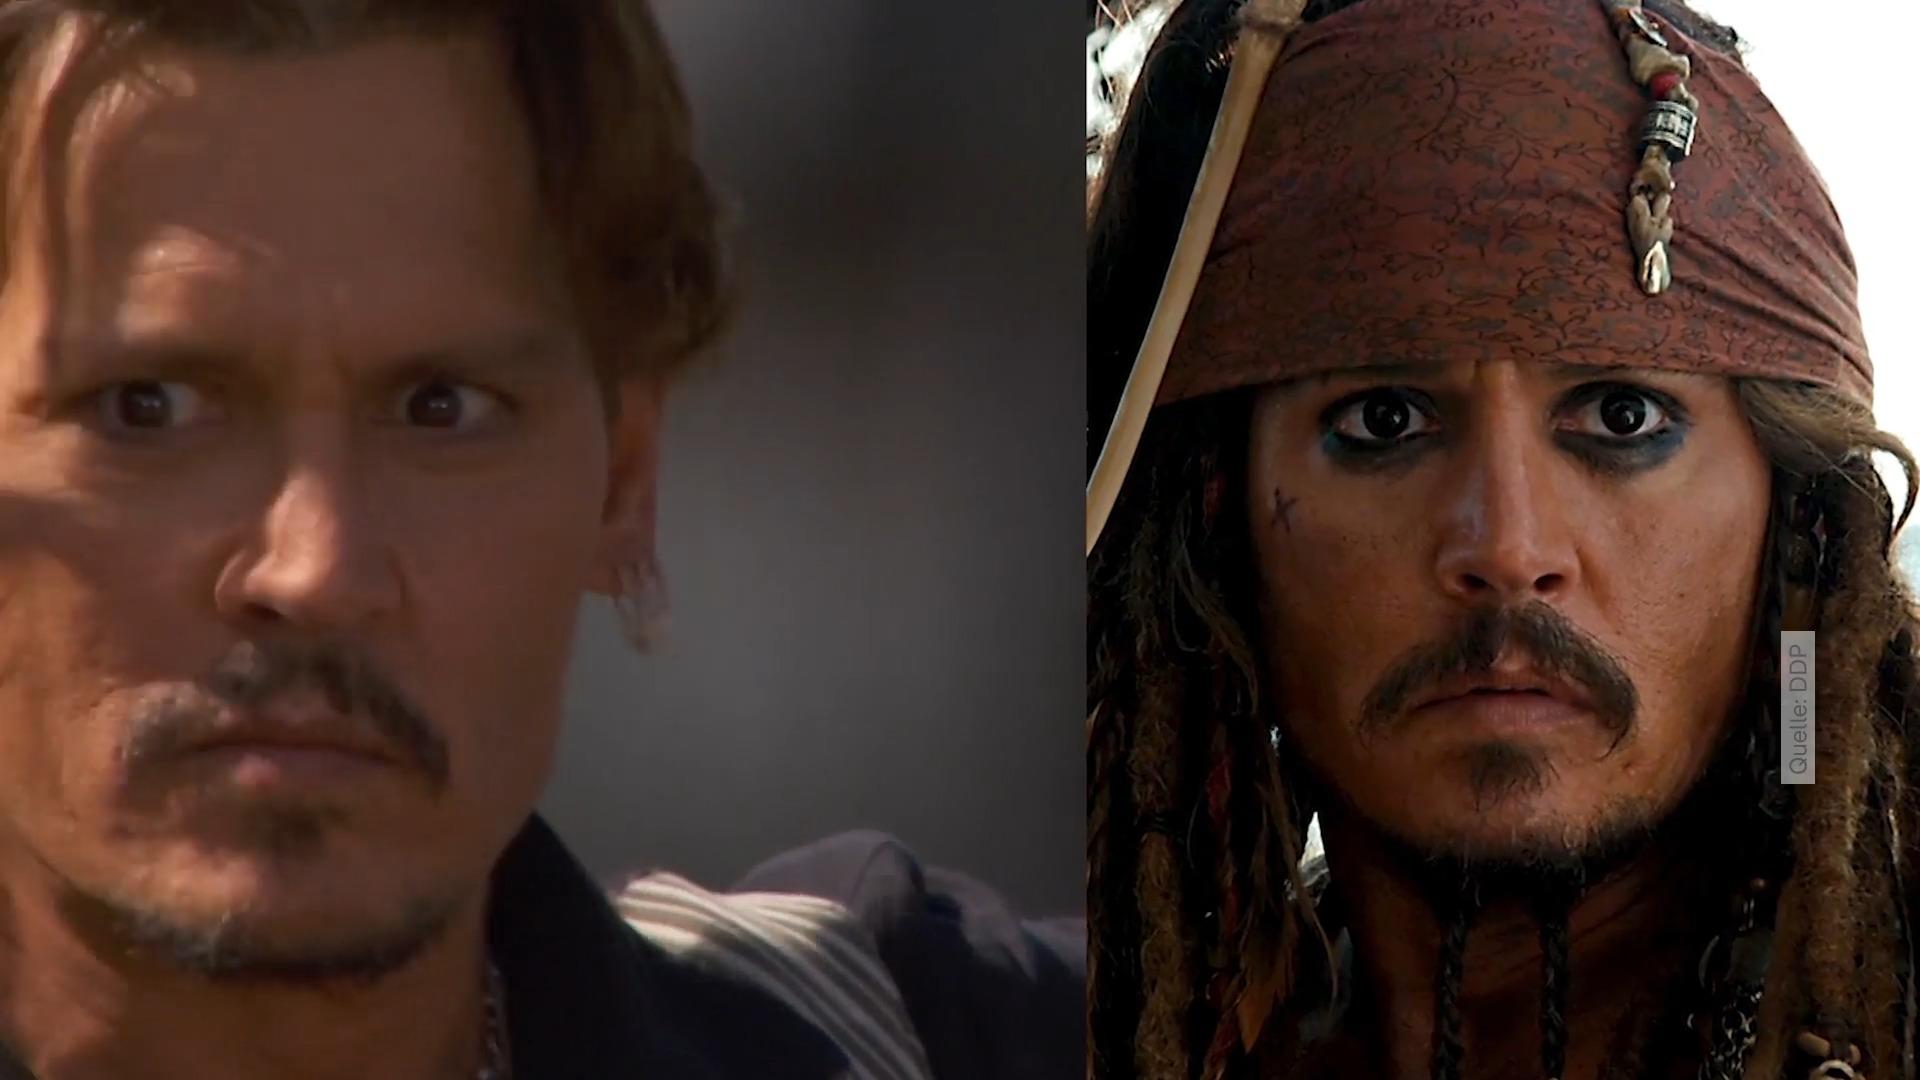 Schlüpft Depp wieder in die Piraten-Rolle von Jack Sparrow? Riesige Verwirrung um neuen "Fluch der Karibik"